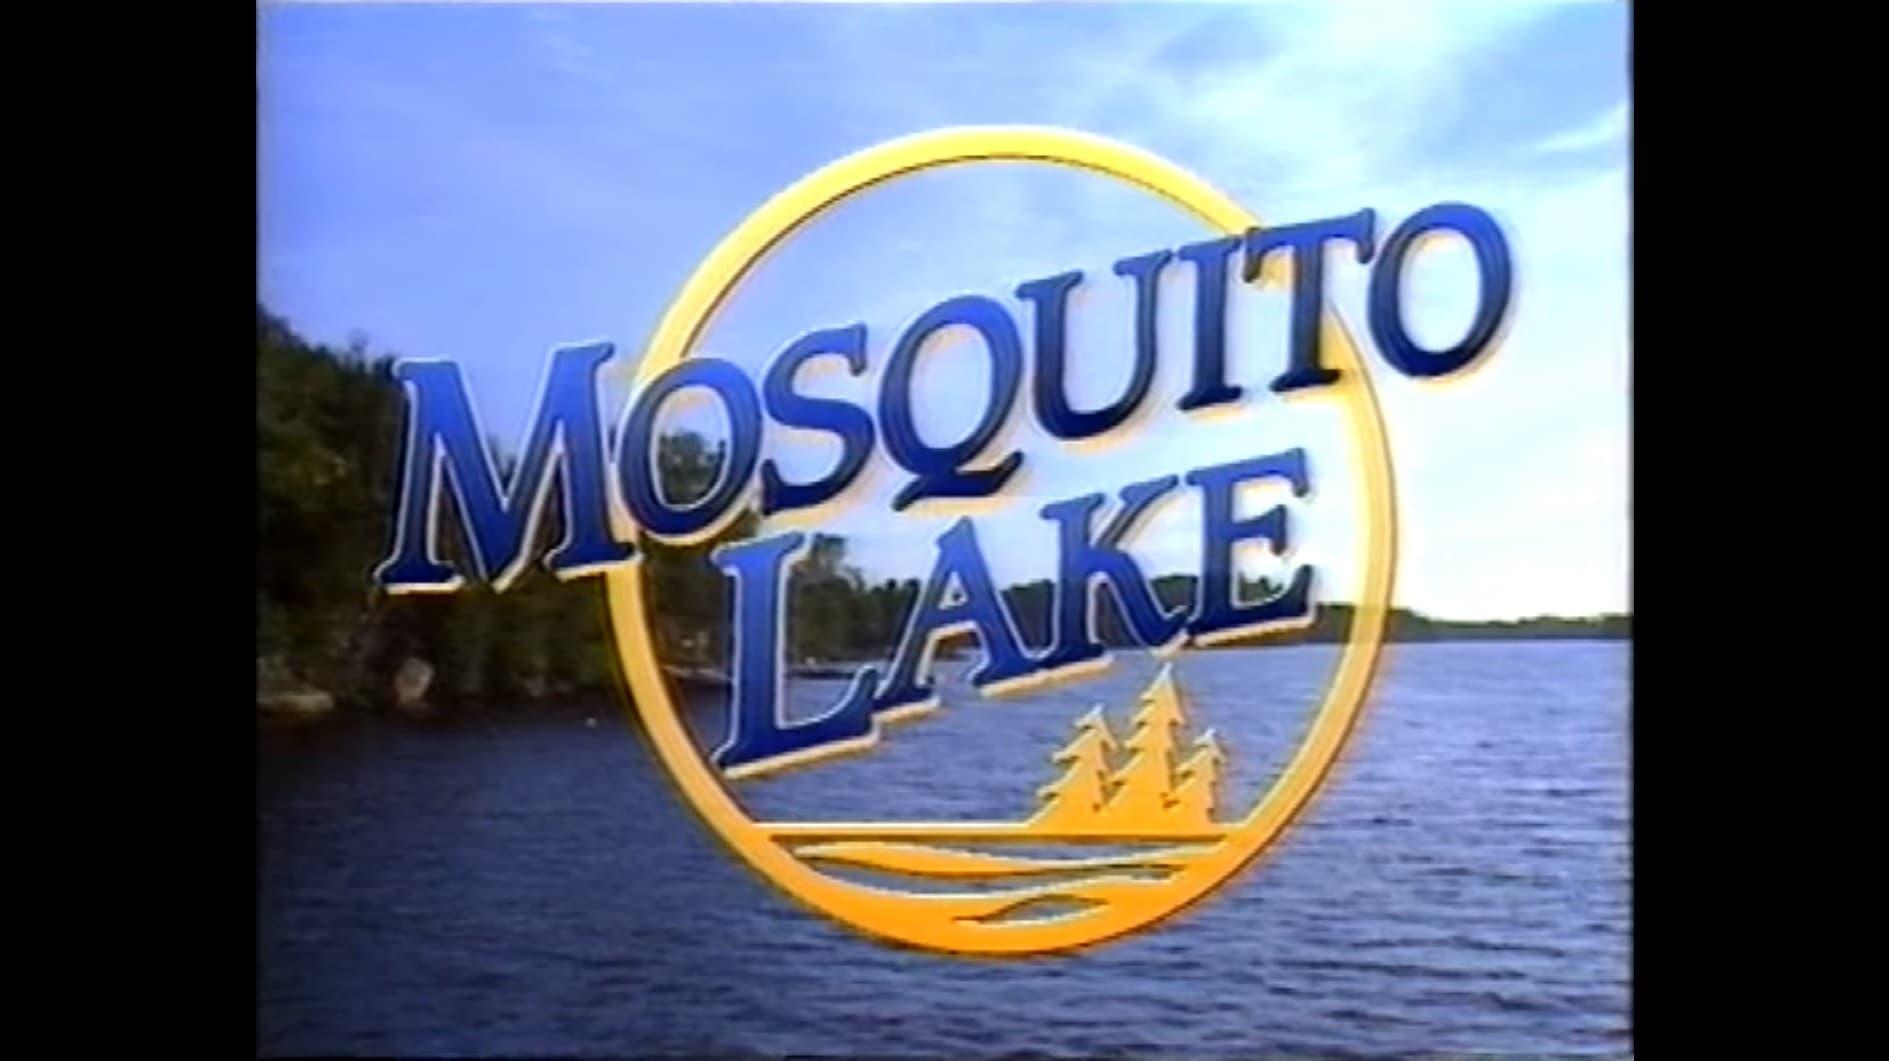 Mosquito Lake backdrop